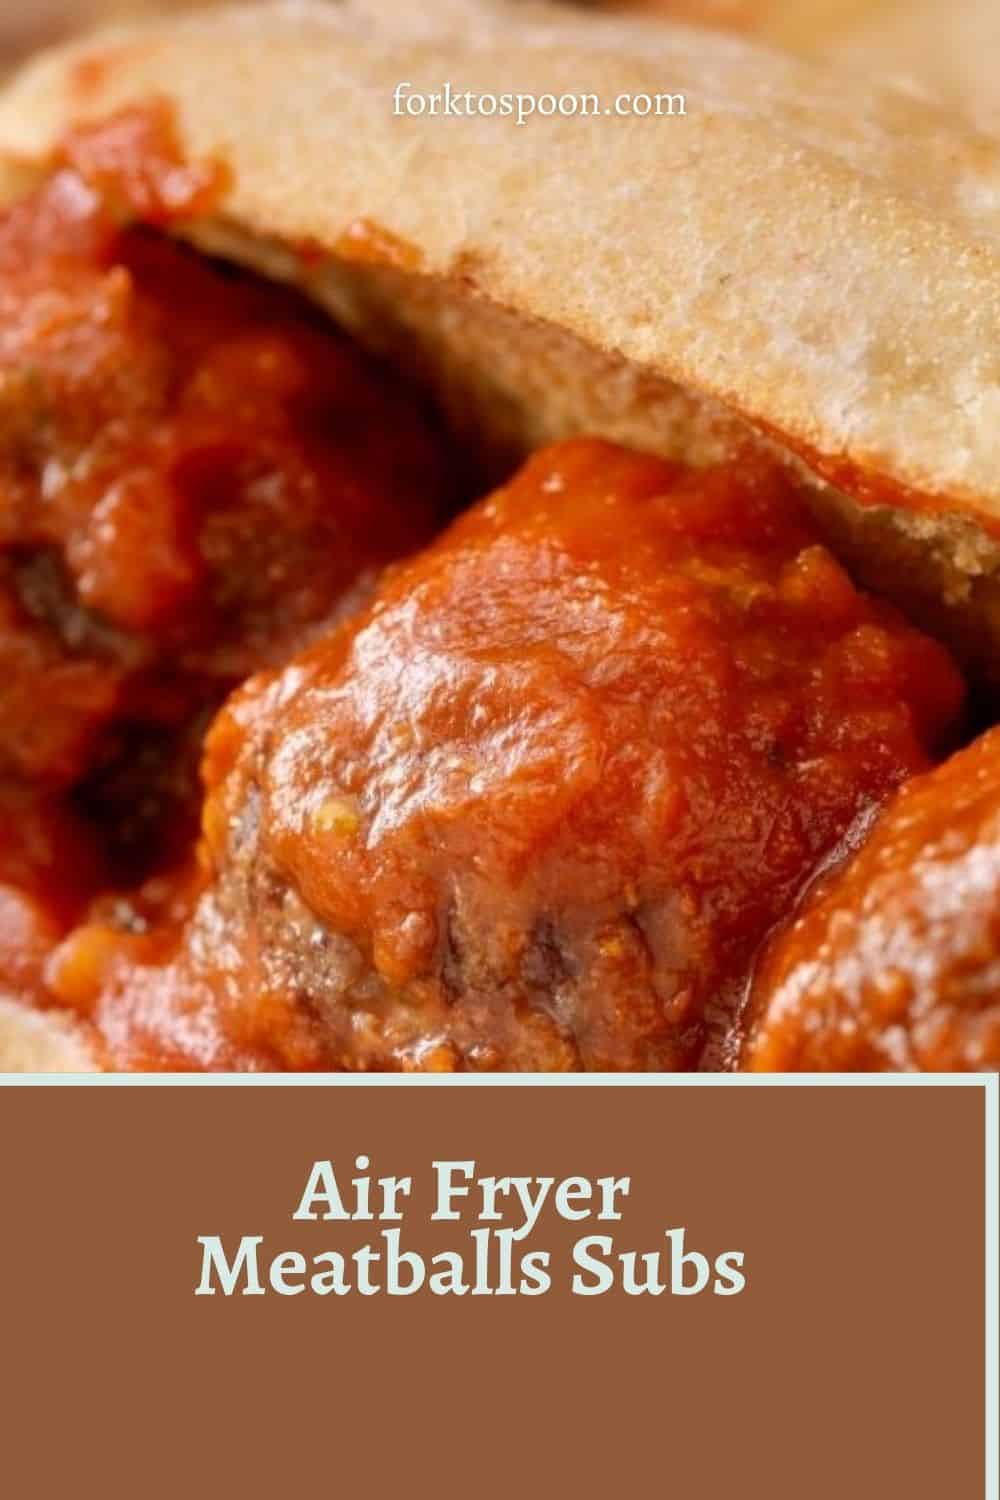 Air Fryer Meatballs Subs